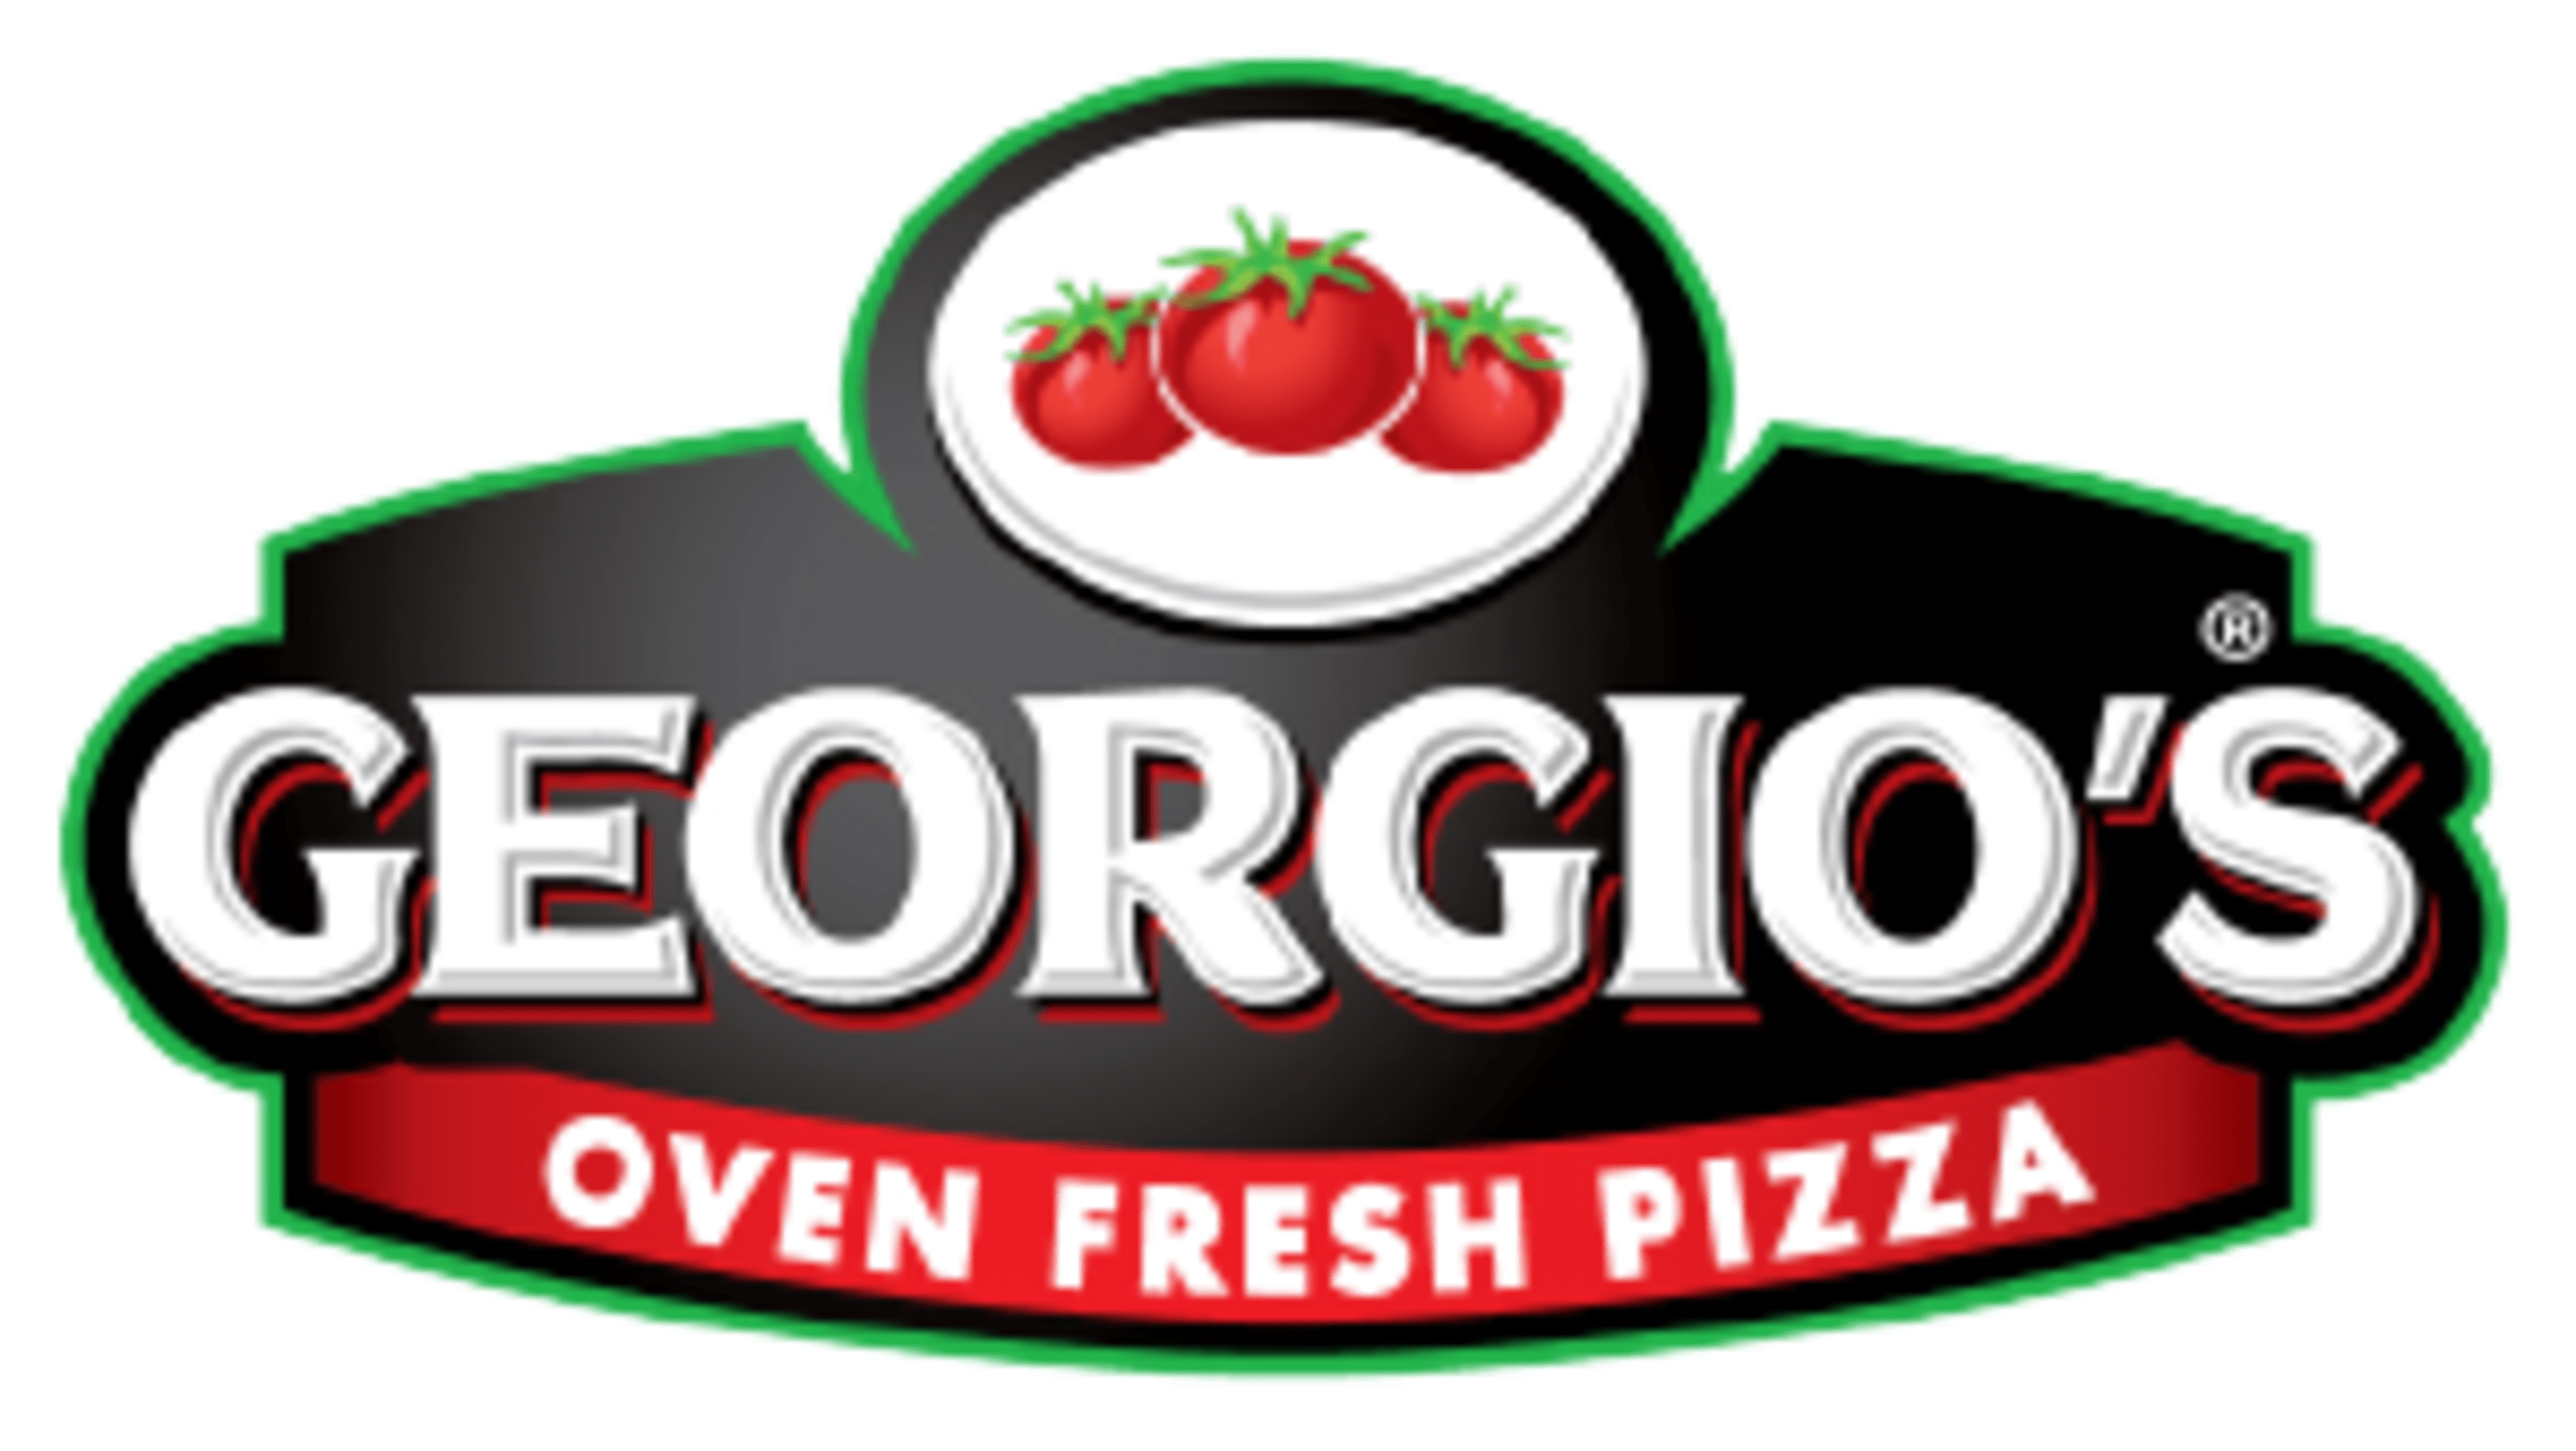 Georgio's Oven Fresh Pizza Co.Code